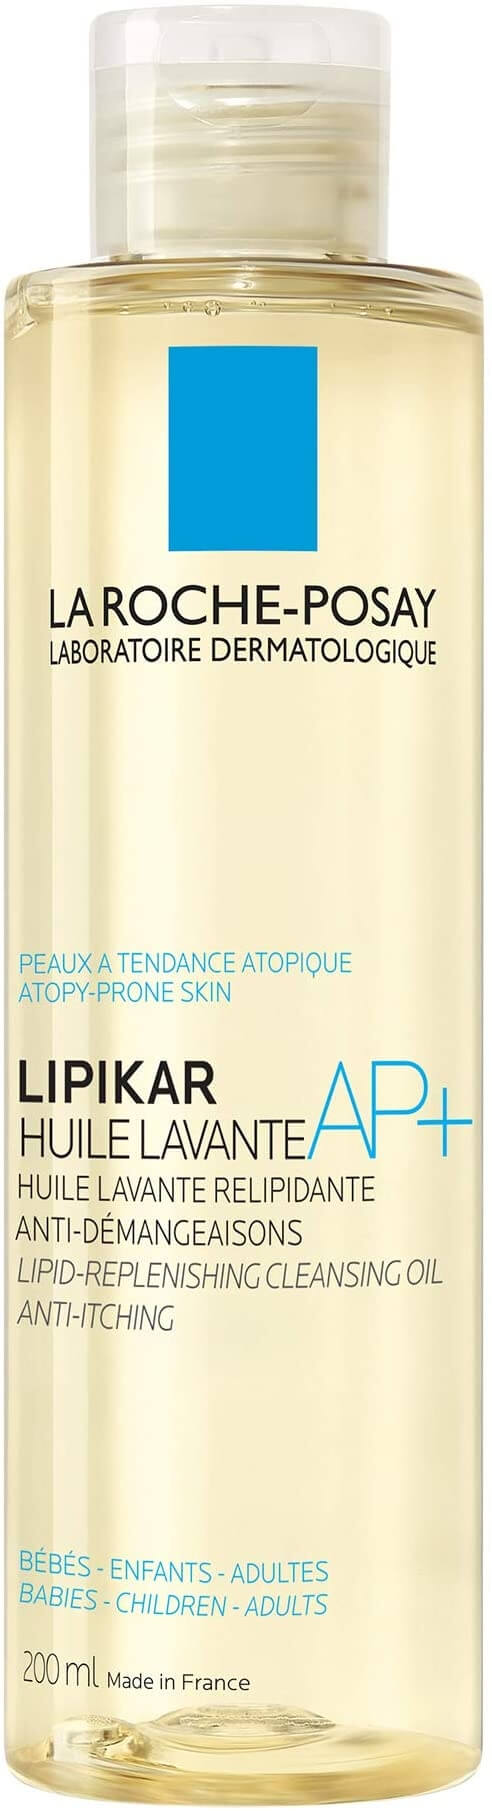 La Roche Posay Zvláčňující sprchový a koupelový olej pro citlivou pokožku Lipikar Huile Lavante AP+ (Lipid-Replenishing Cleansing Oil) 400 ml - náhradní náplň